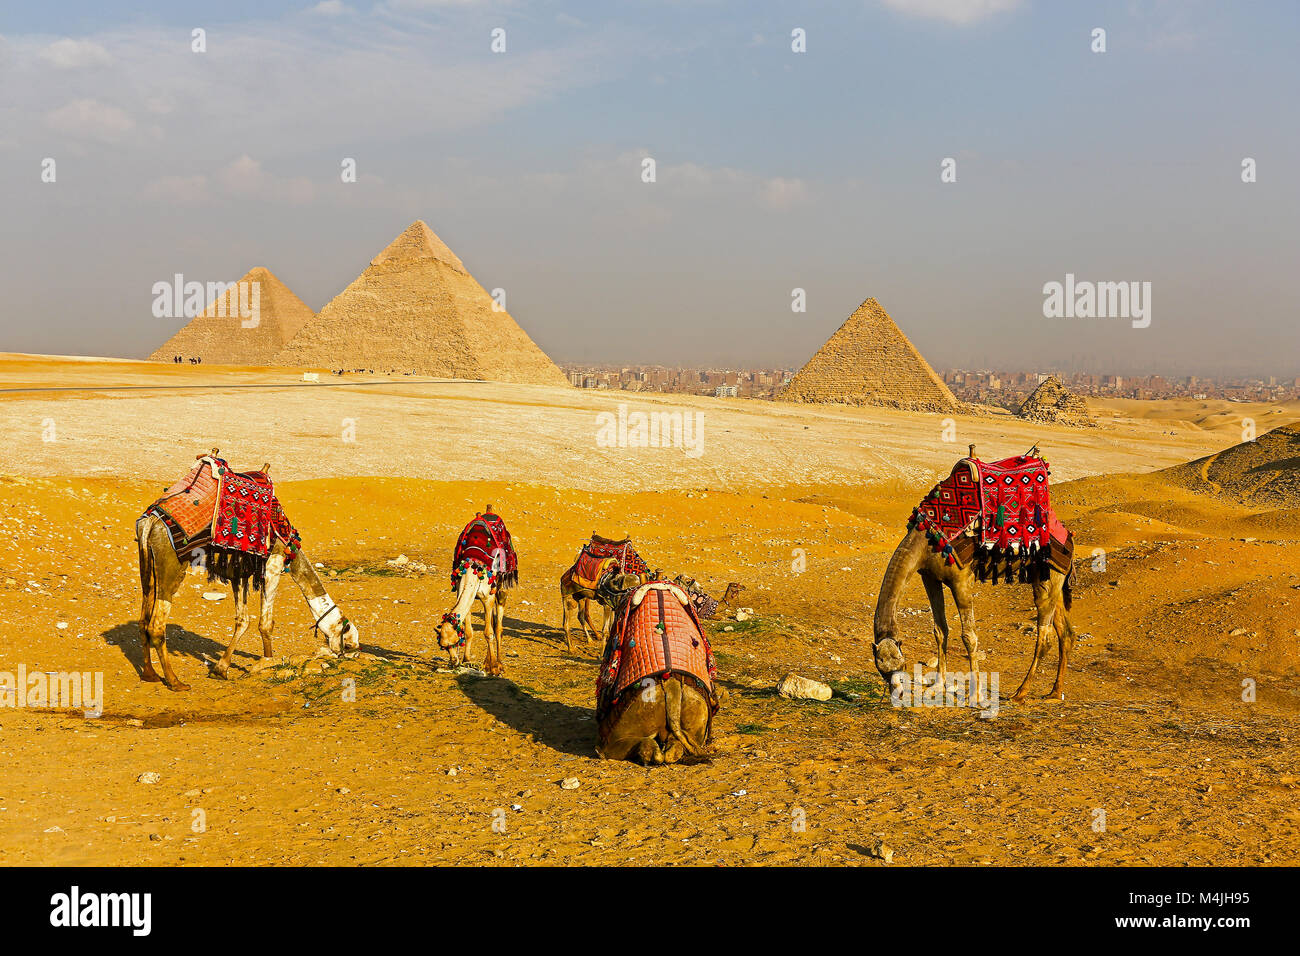 Kamele vor der Großen Pyramide von Gizeh oder Pyramide des Cheops, Pyramide von Cheopshe und die Pyramide des Menkaure, Pyramiden, Giza, Ägypten, Nordafrika Stockfoto